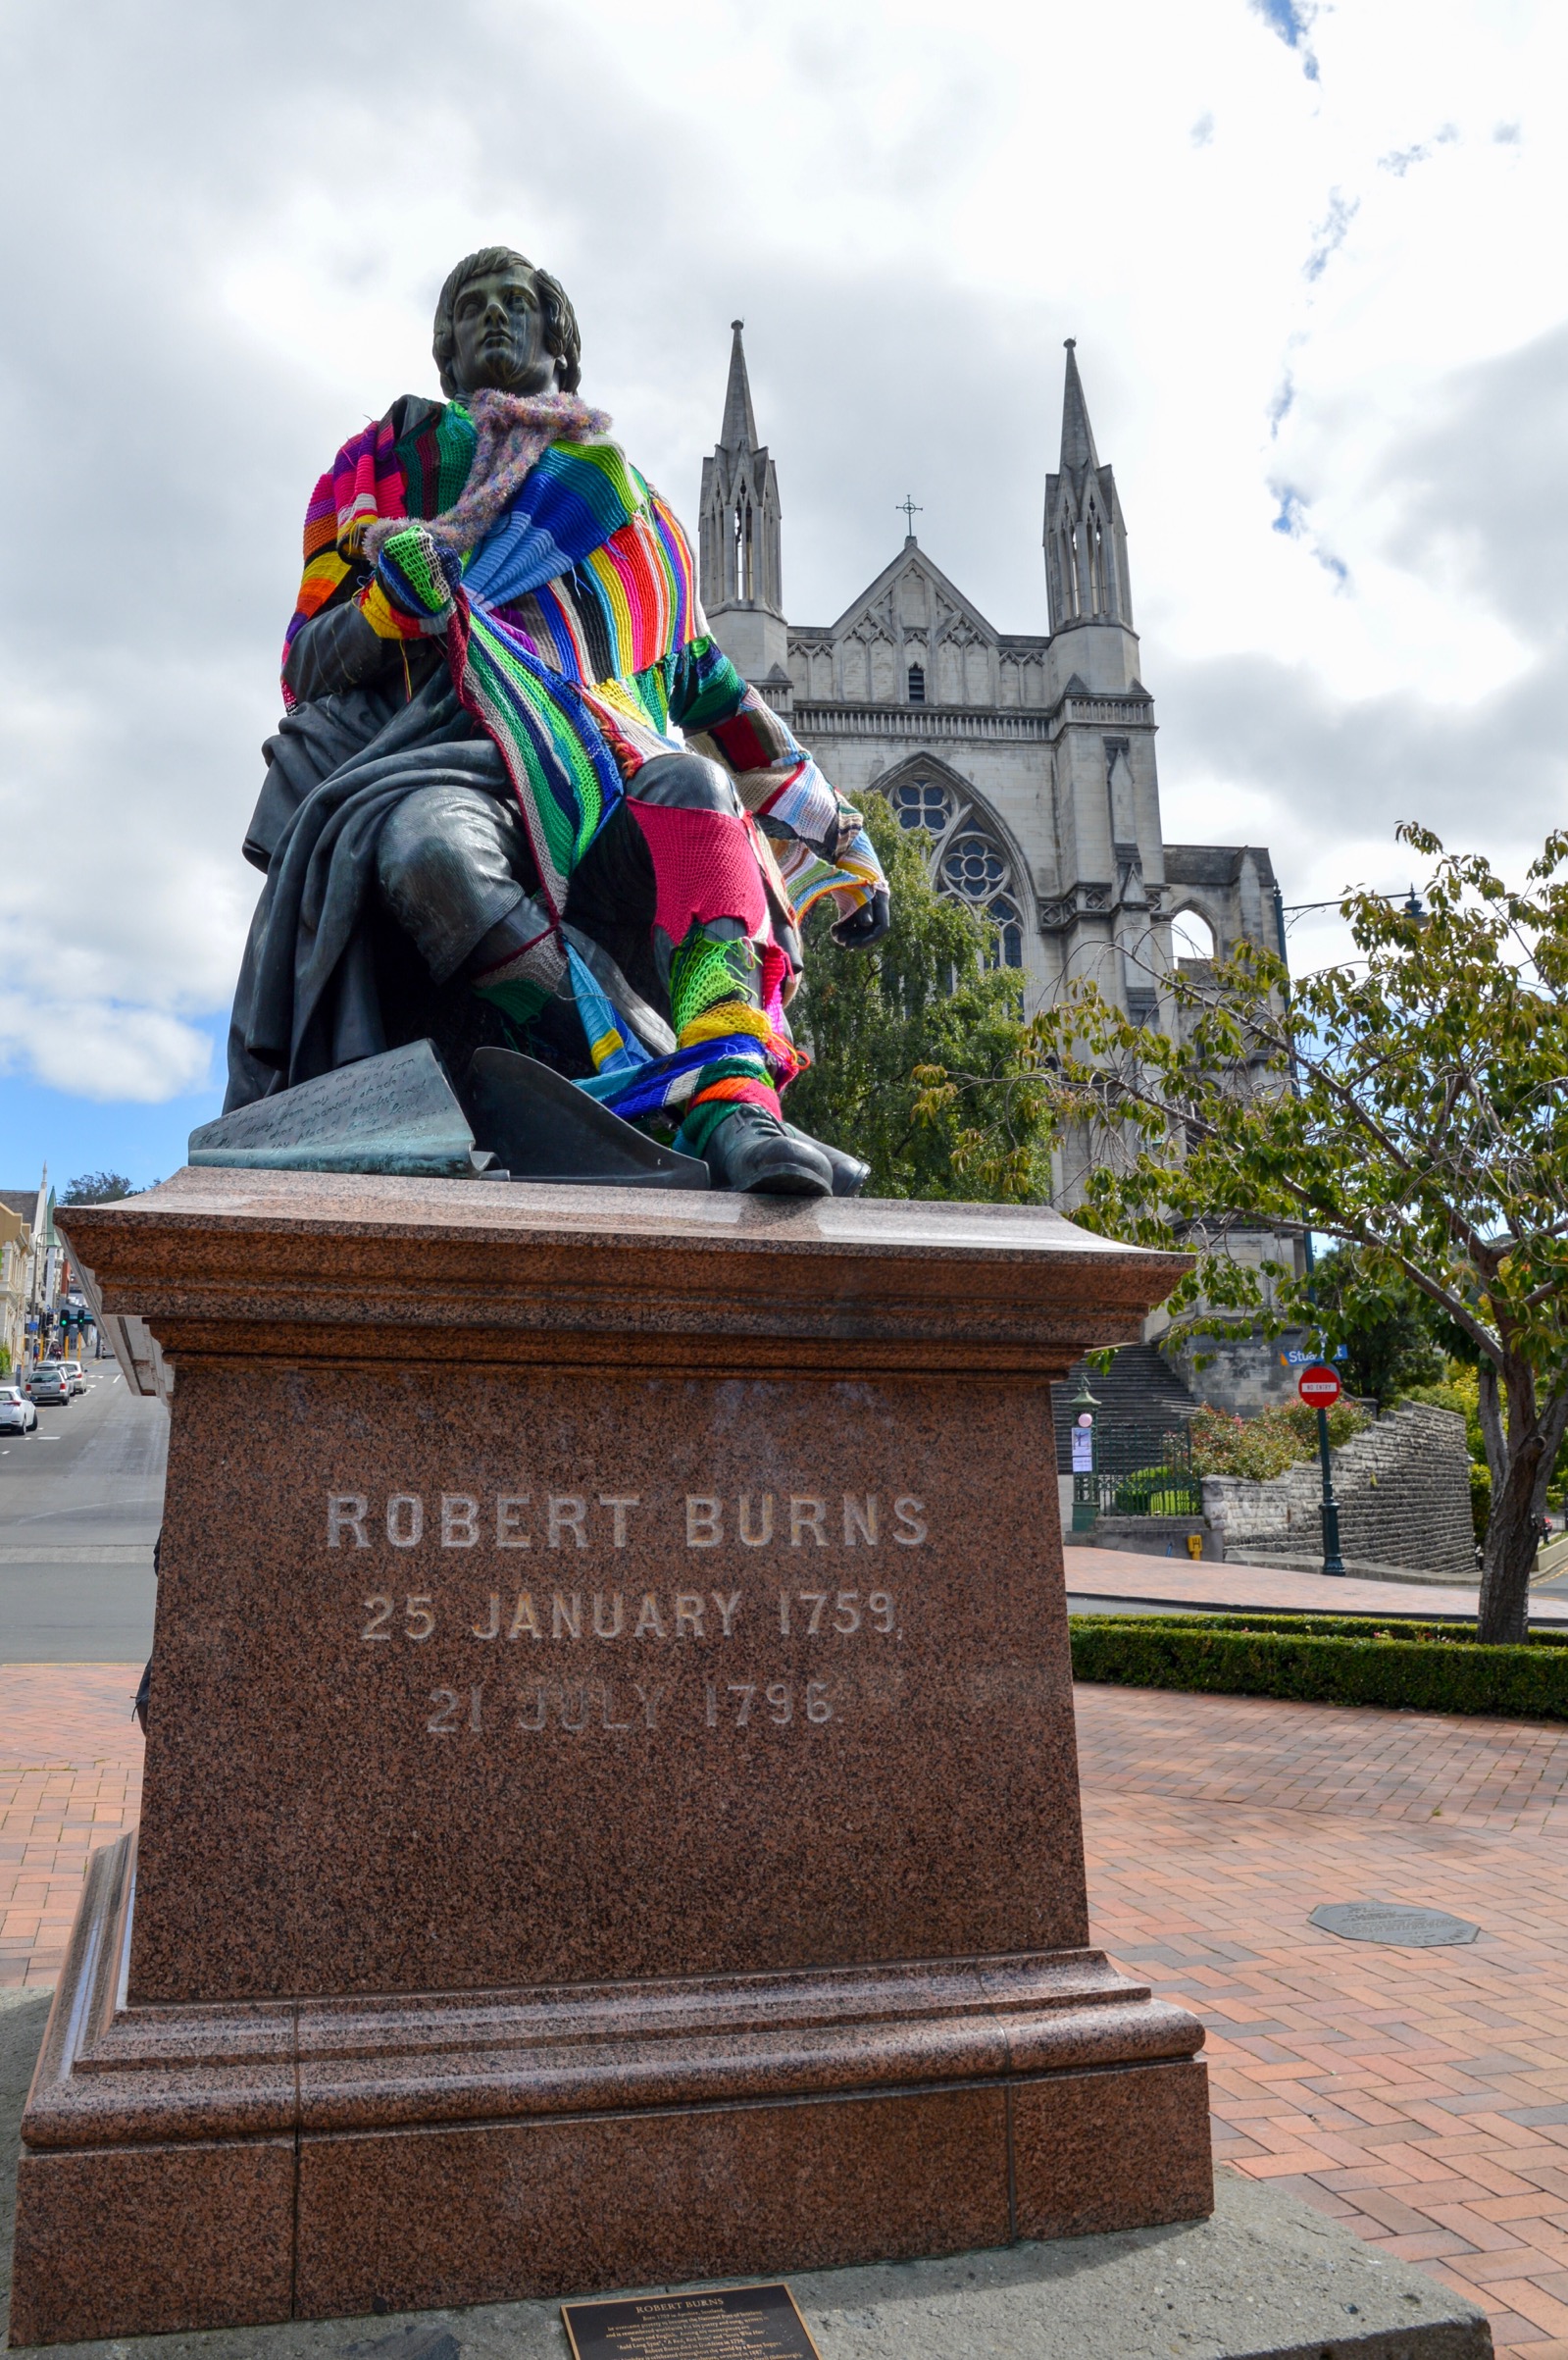 Robert Burns statue, Dunedin, New Zealand